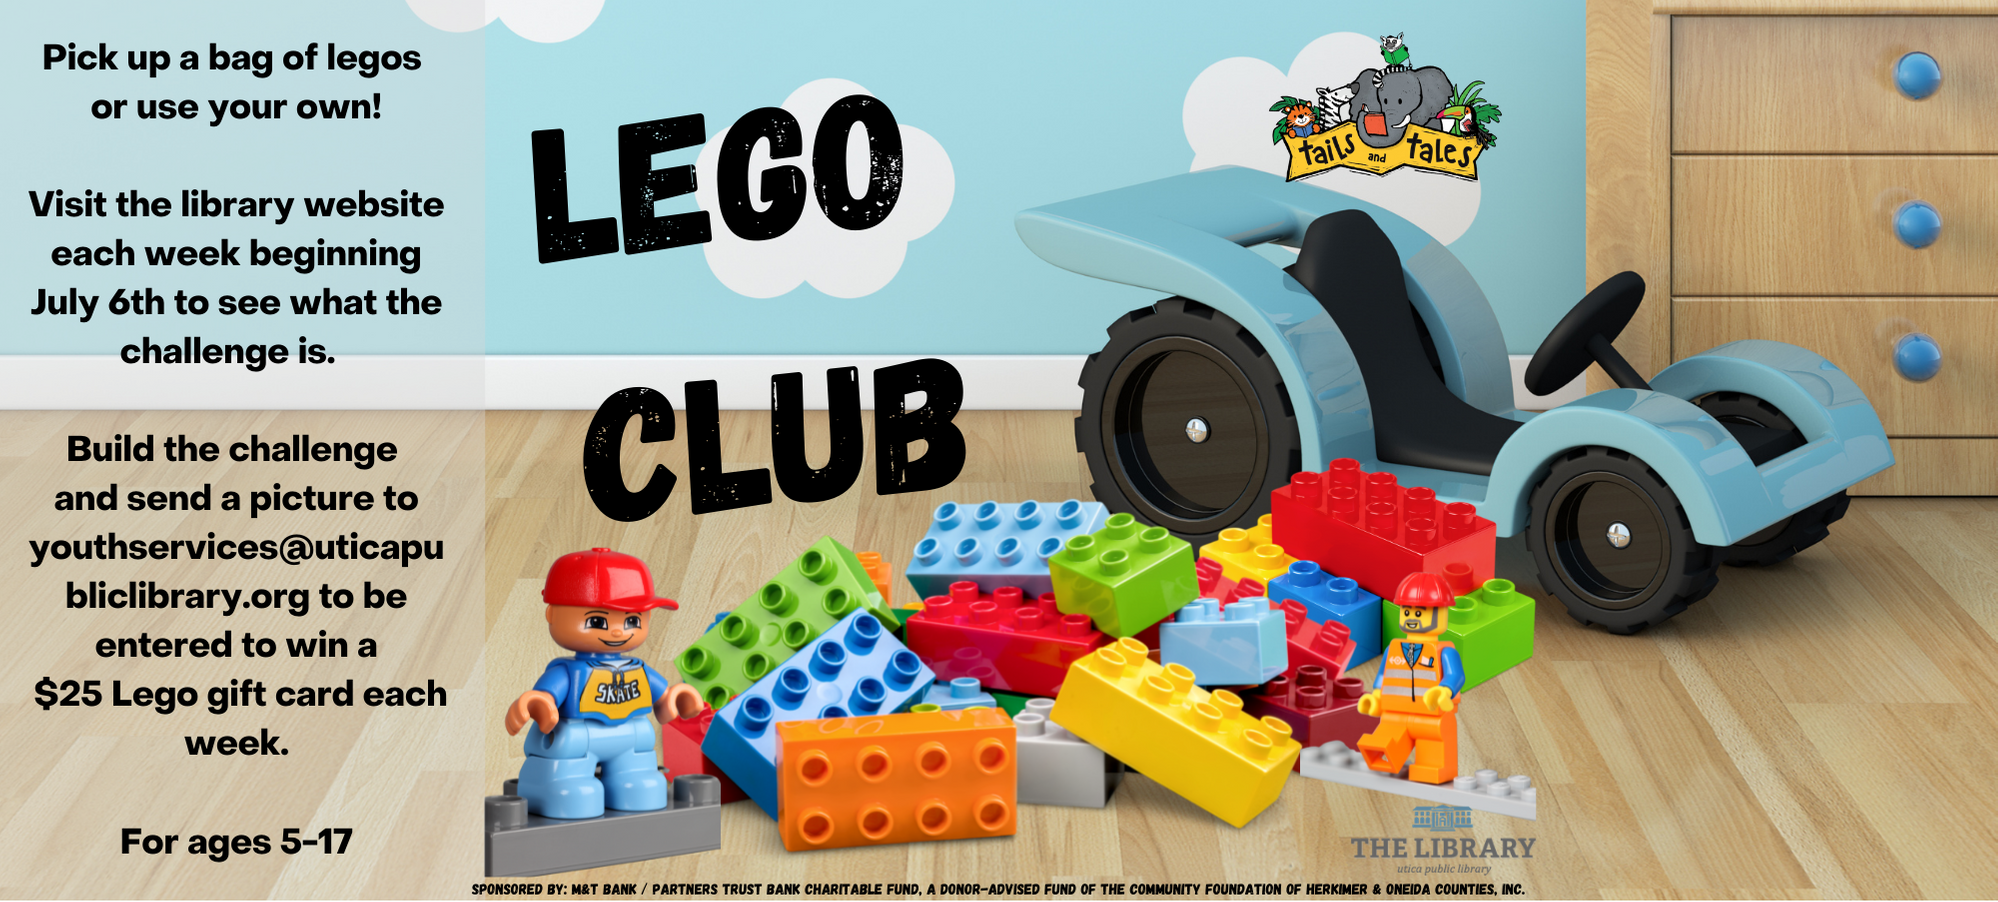 Copy of Lego Club